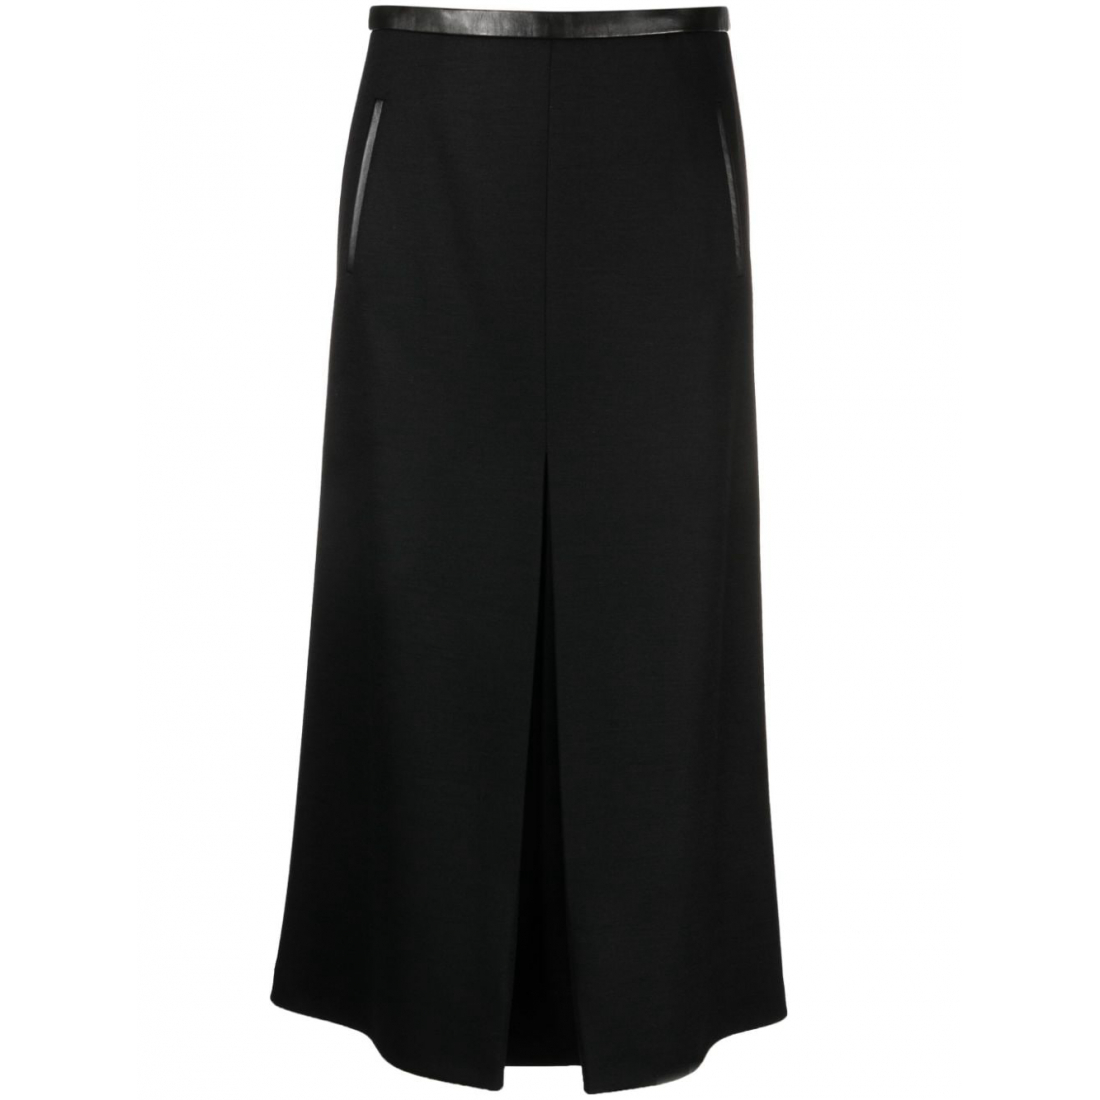 Women's 'Pleat' Midi Skirt